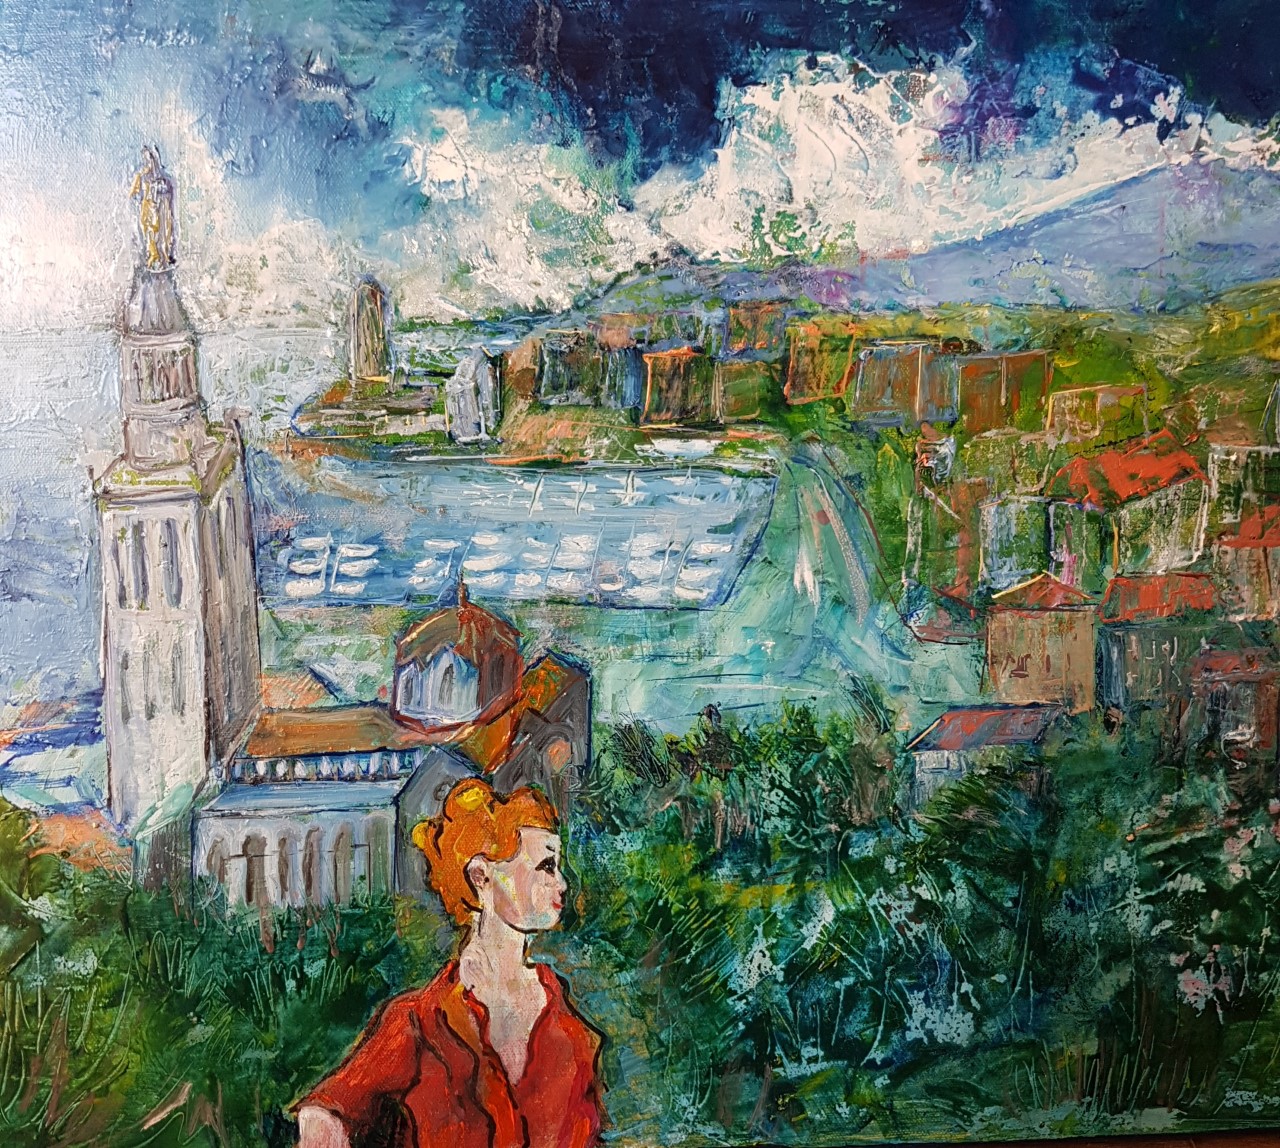 Peinture de l'artiste peintre Adèle liva, le titre de l'oeuvre est : St Six au couchant